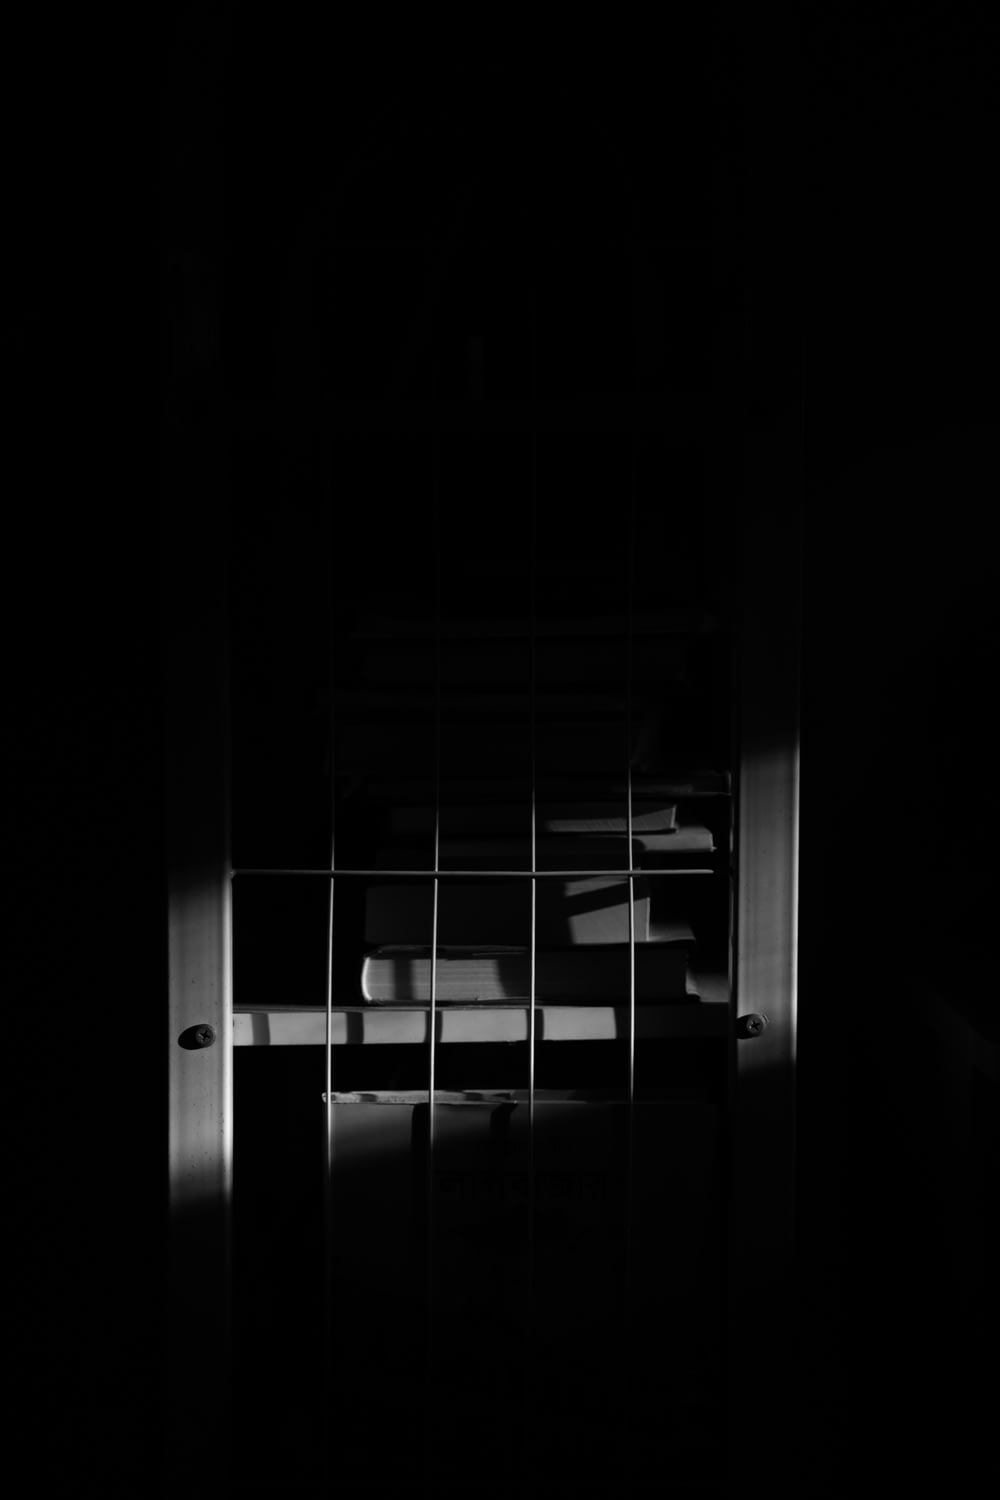 어두운 방에서 창문의 흑백 사진